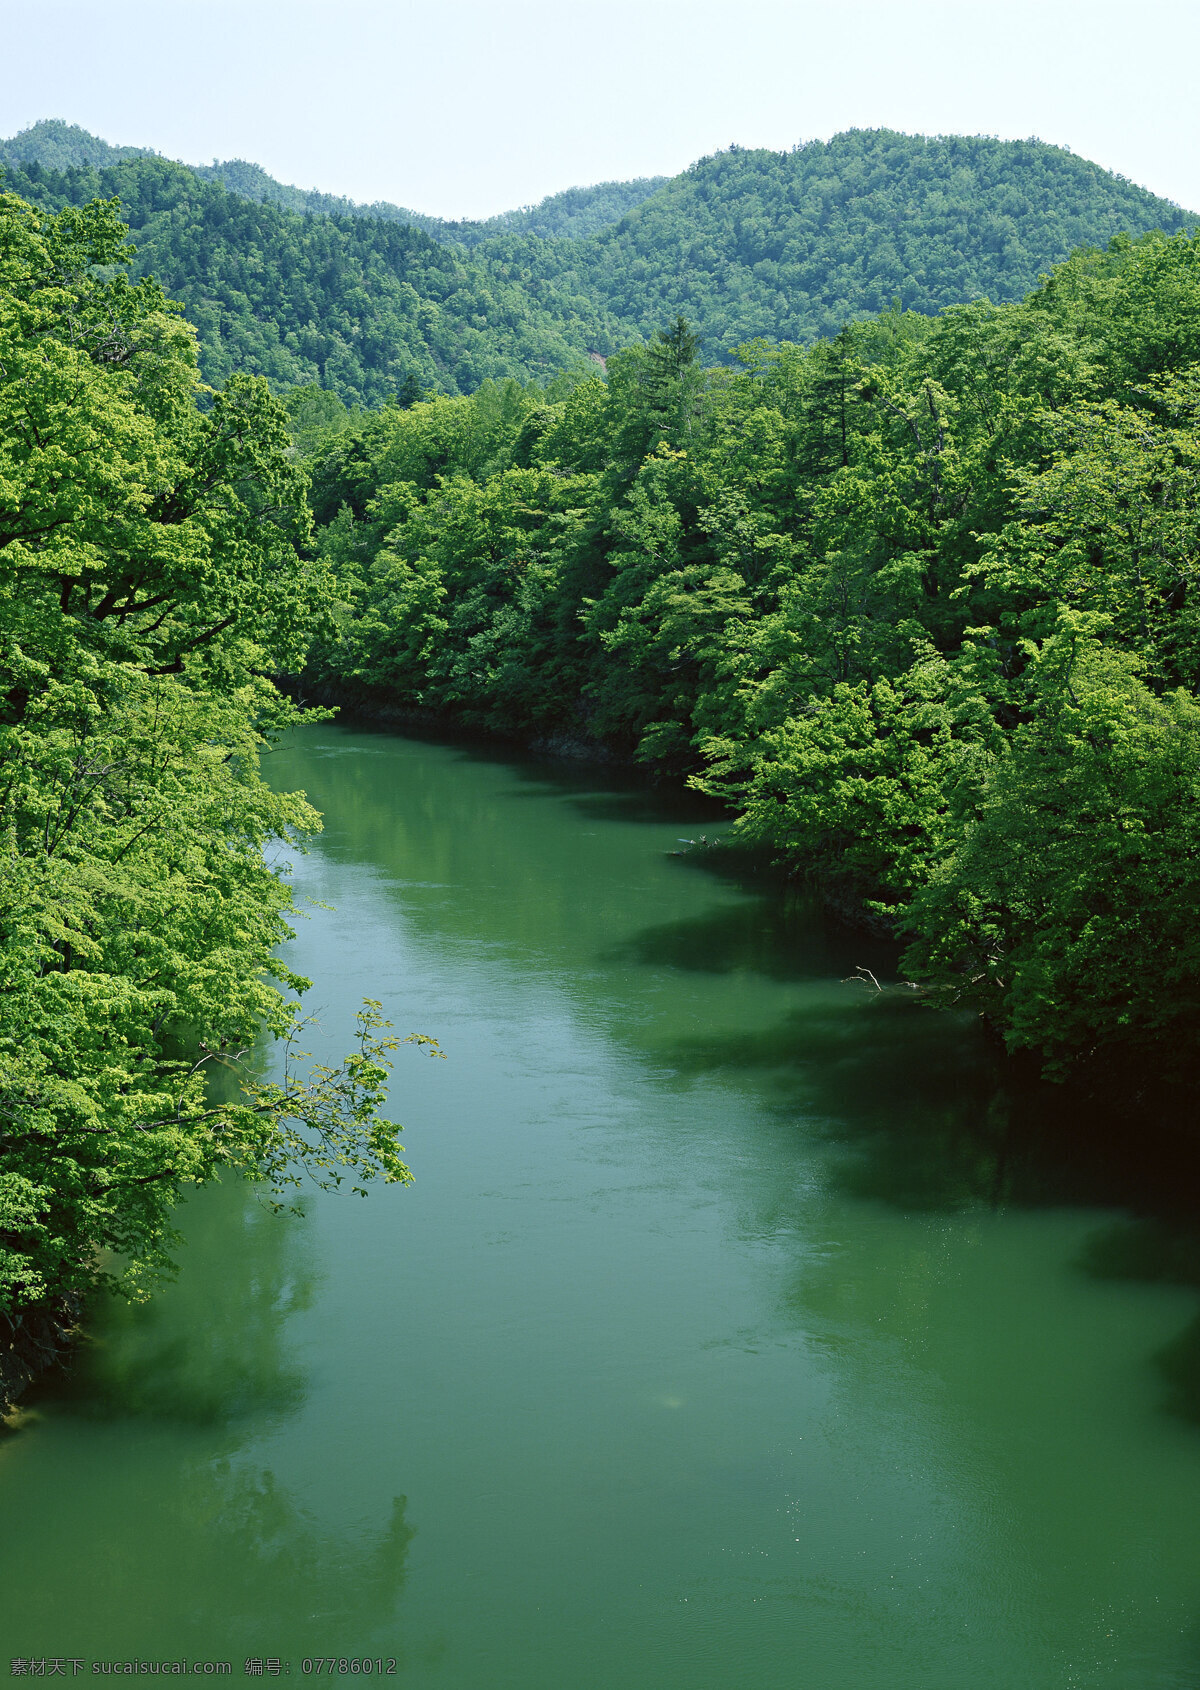 美丽 林间 小溪 美丽风景 自然风景 风景摄影 大自然 美景 景色 山水风景 树林 小河 河流 风景图片